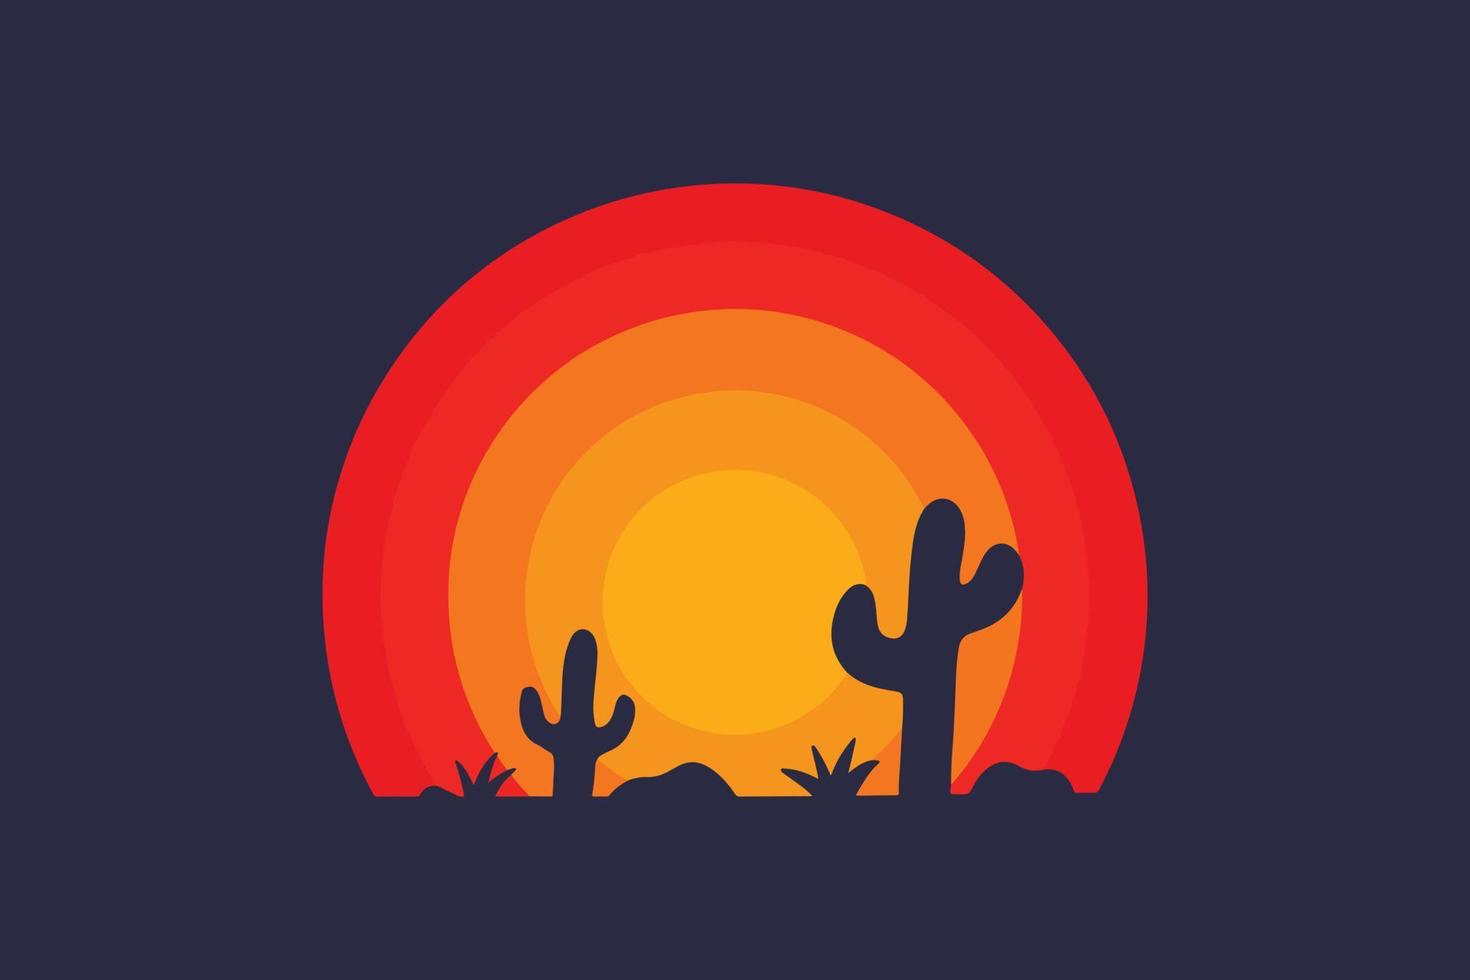 öken- med kaktus bricka design vektor